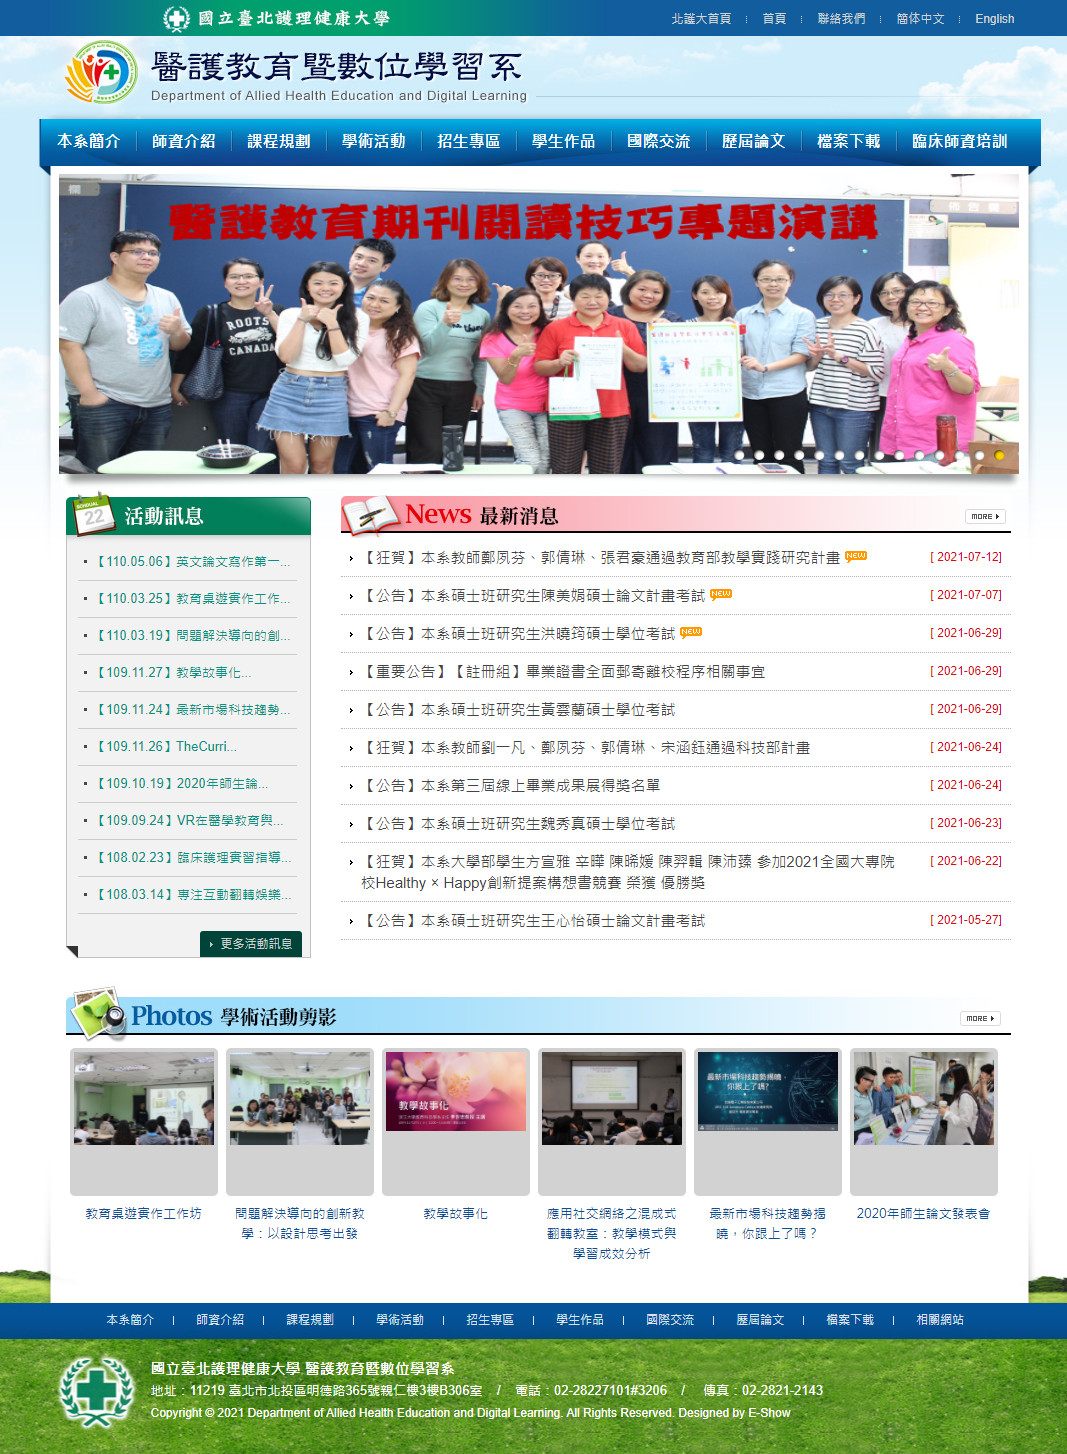 臺北護理健康大學 學校學系網站設計
網站設計